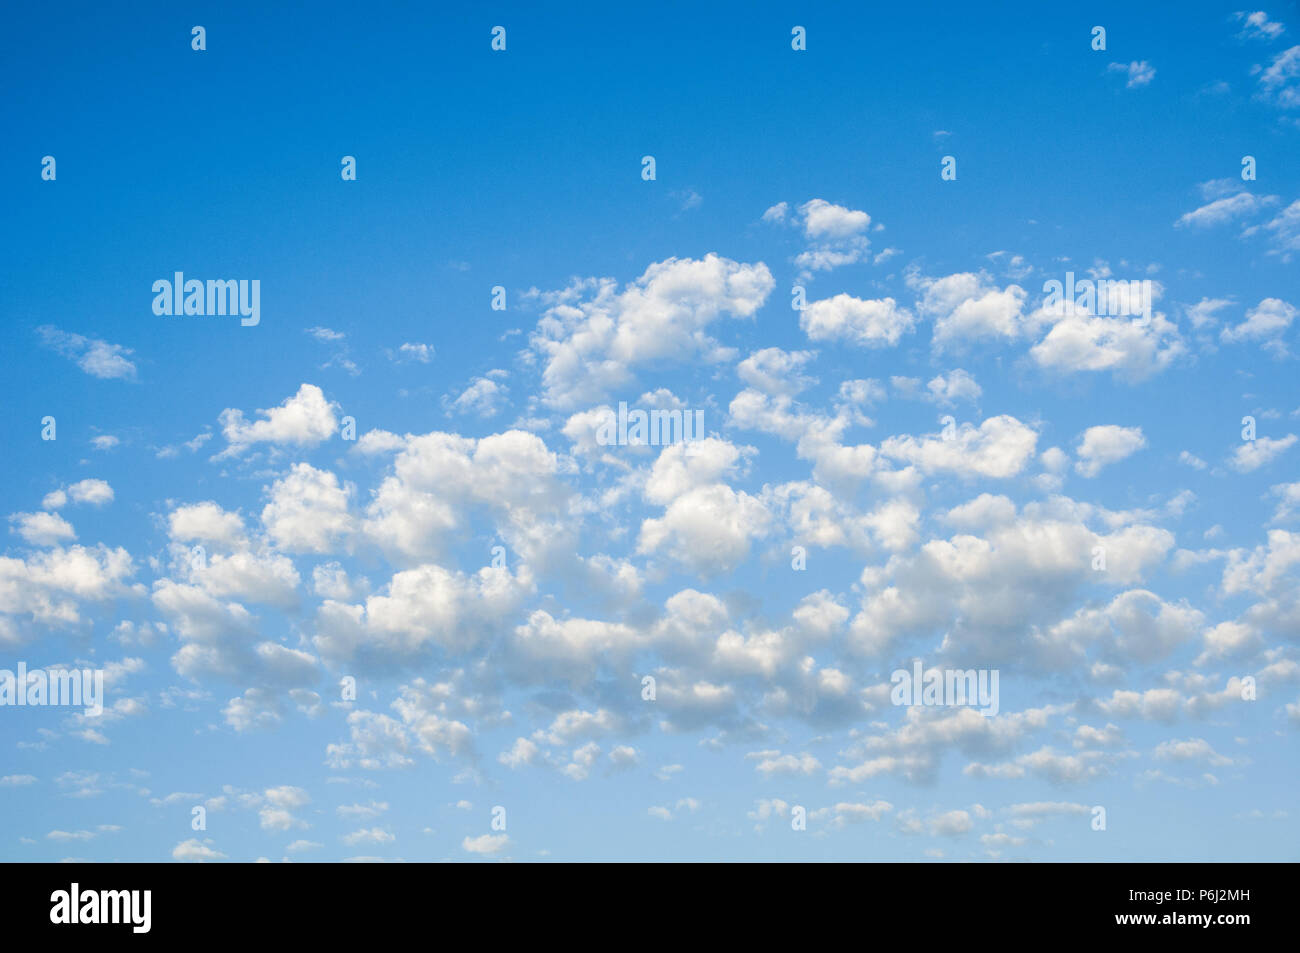 Die schöne Landschaft von einer ruhigen blauen Himmel und weißen Wolken an einem hellen Sommertag. Stockfoto